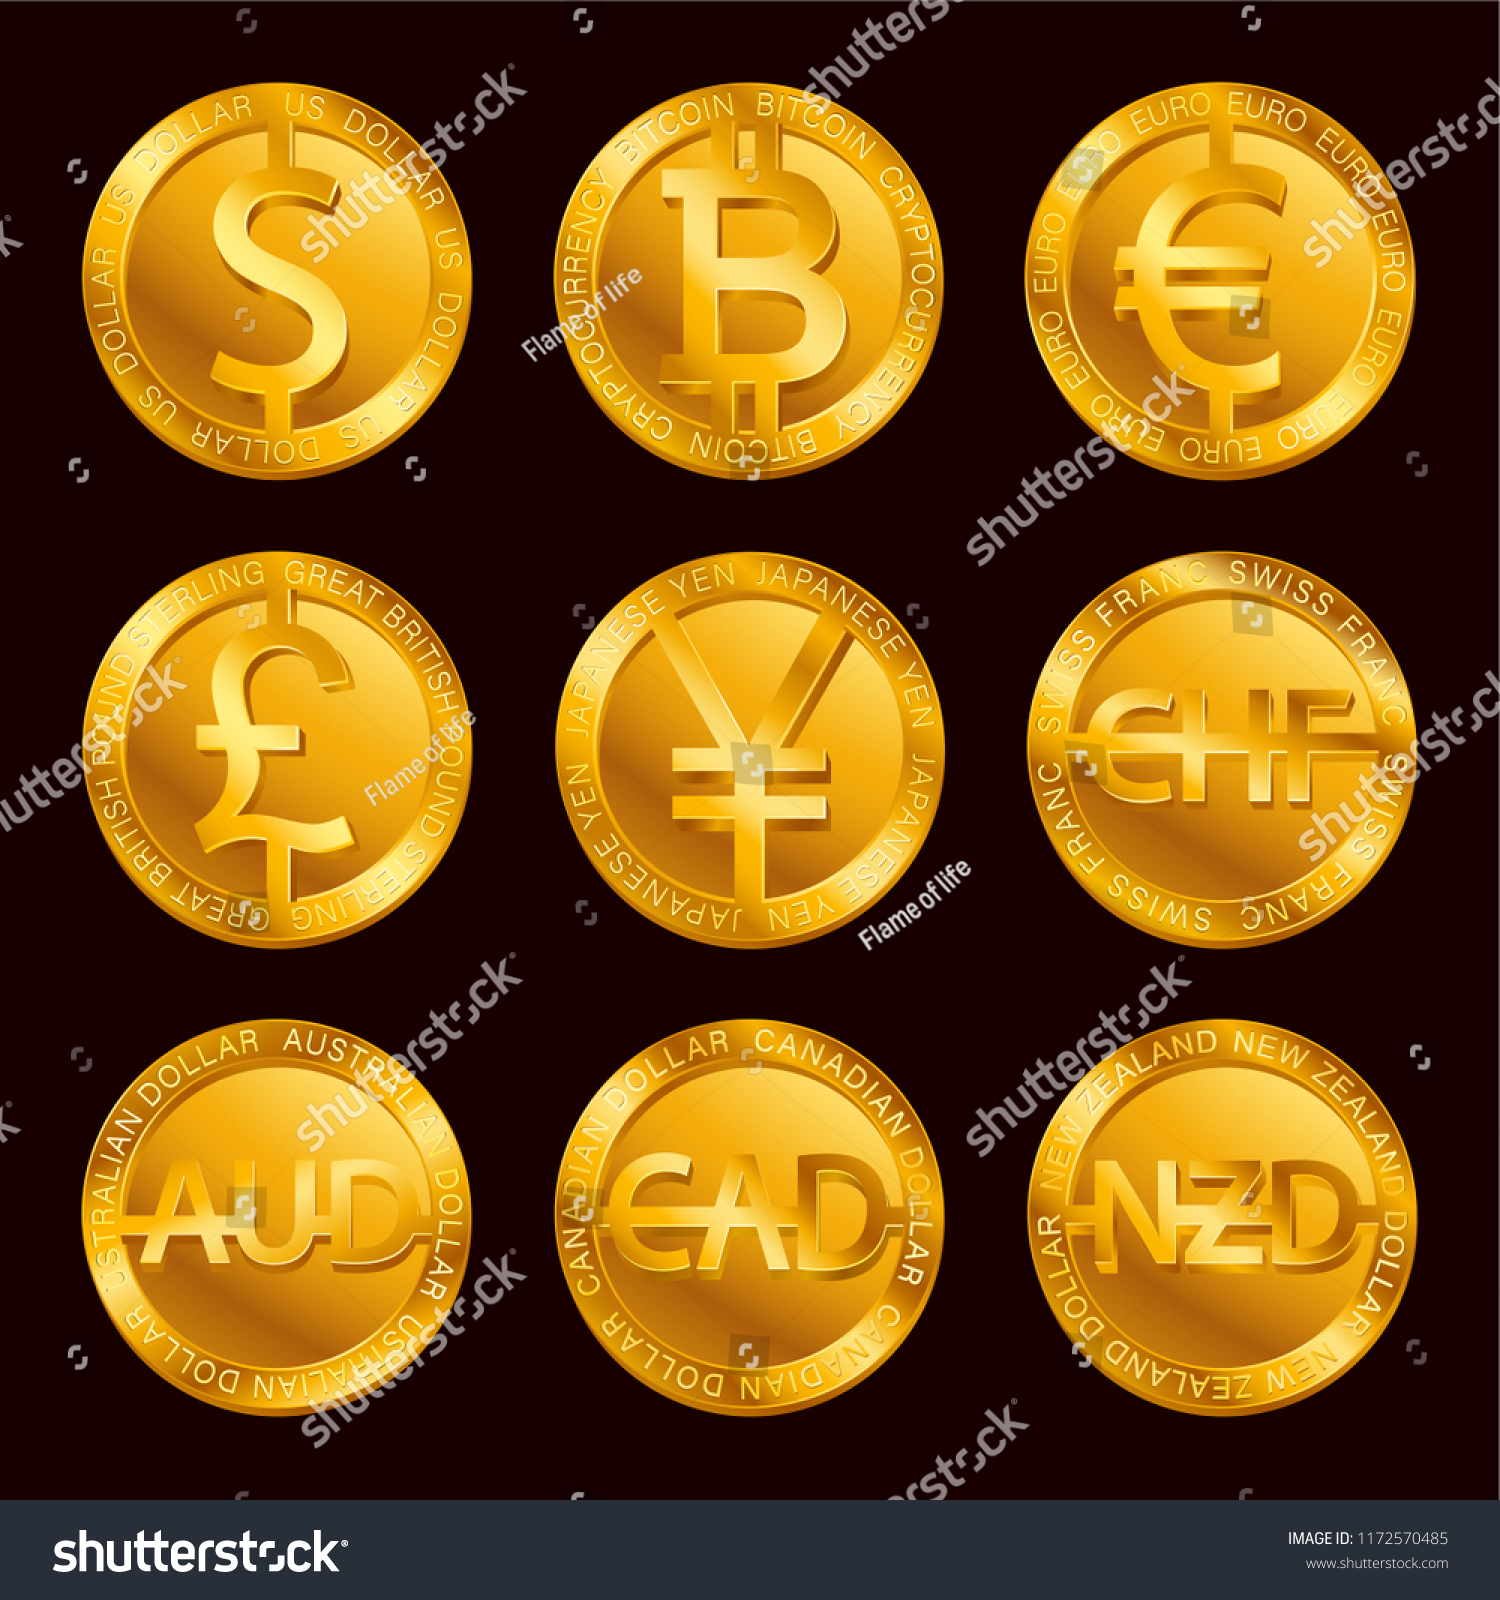 700 euros in bitcoins